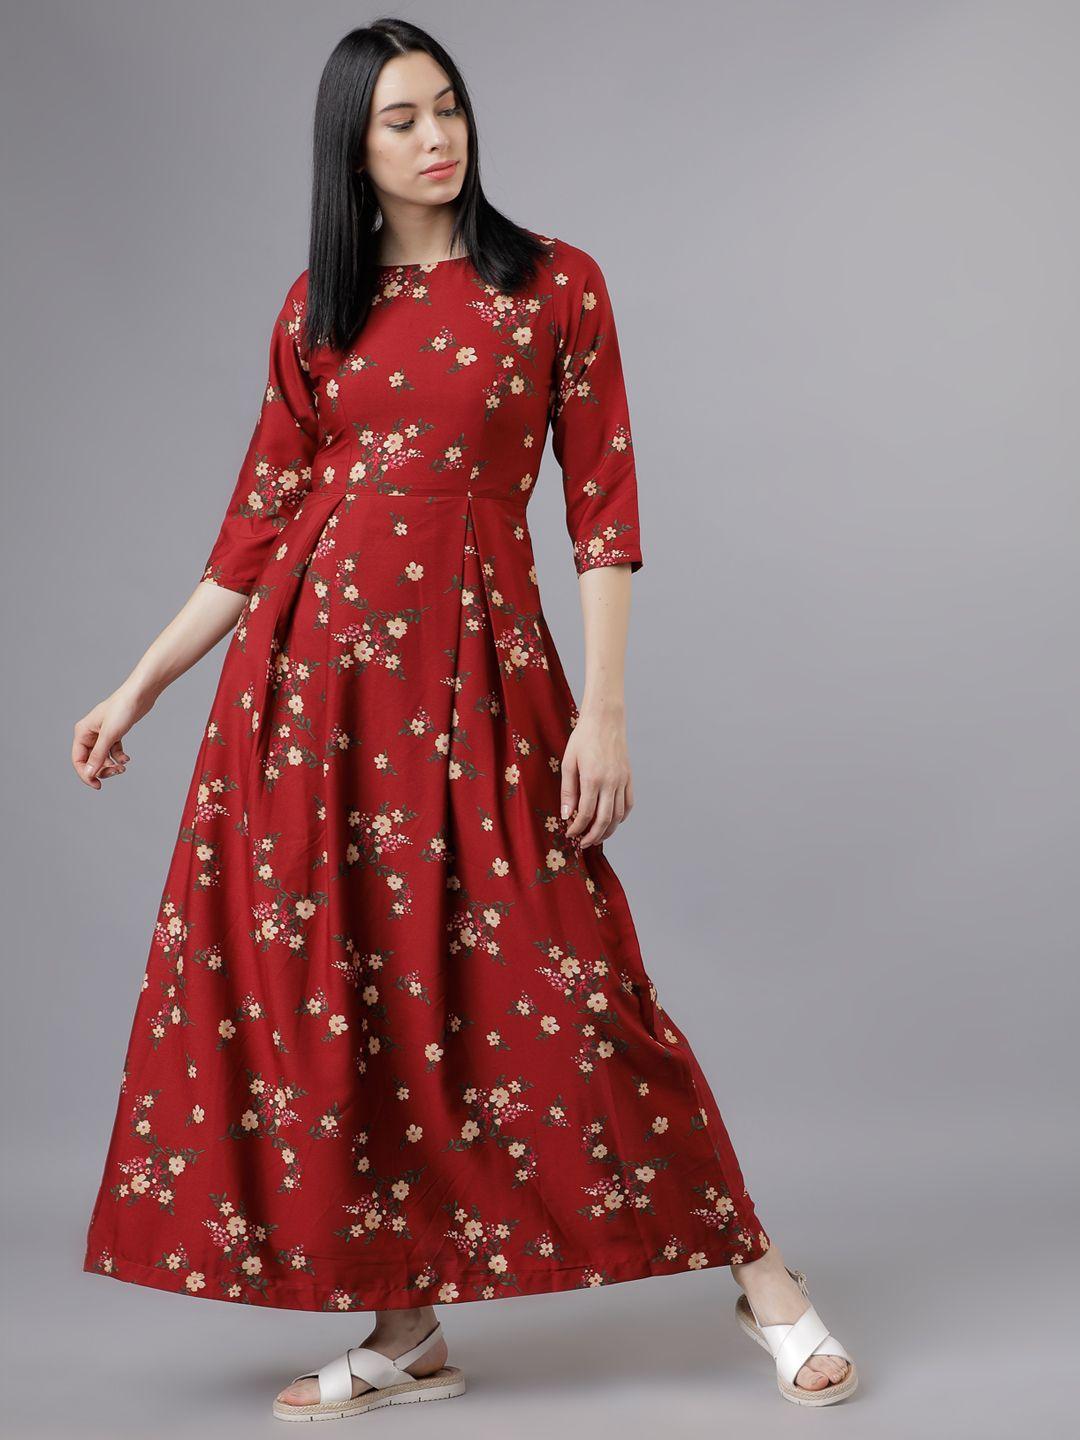 tokyo-talkies-women-rust-floral-print-maxi-dress